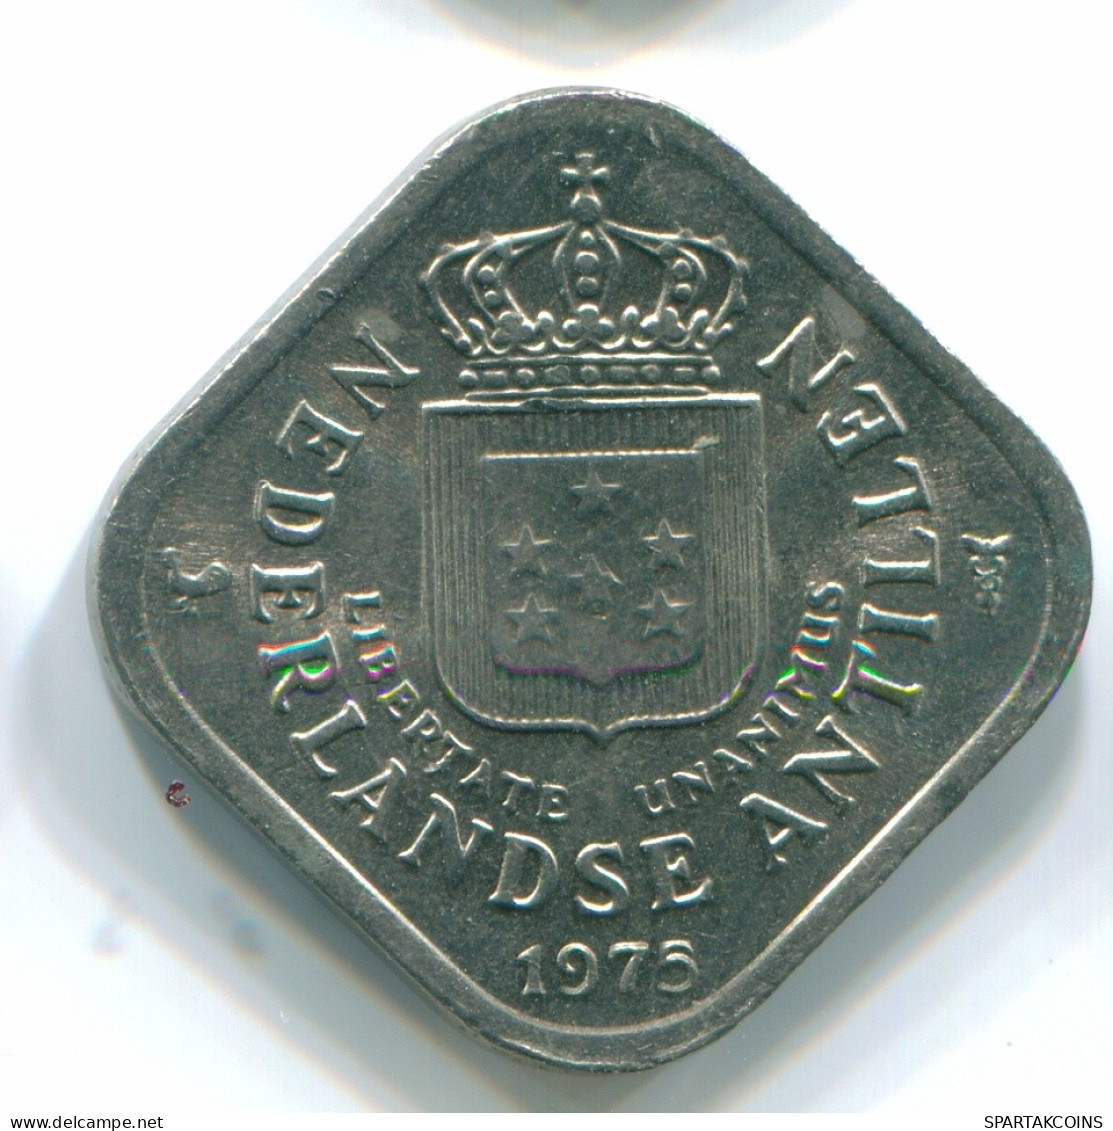 5 CENTS 1975 NIEDERLÄNDISCHE ANTILLEN Nickel Koloniale Münze #S12242.D.A - Niederländische Antillen